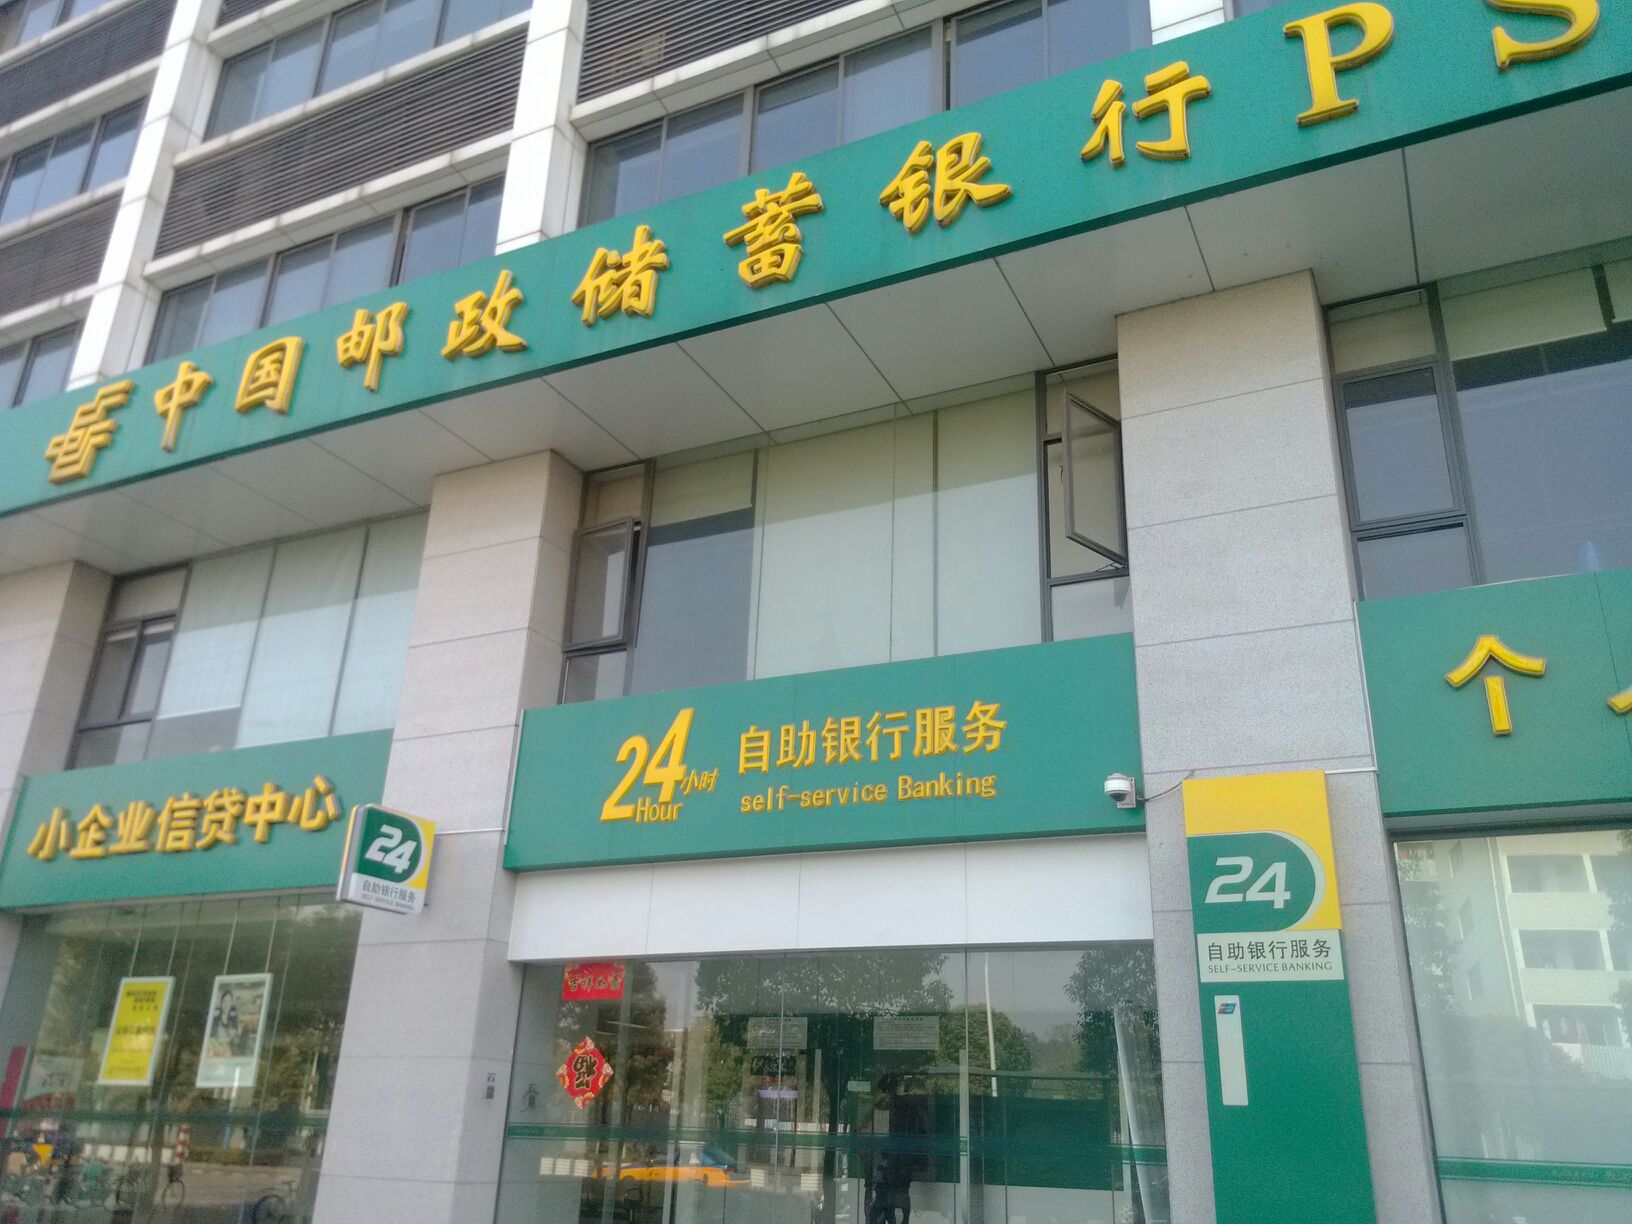 中国邮政储蓄银行24小时自助银行(人民路支行)